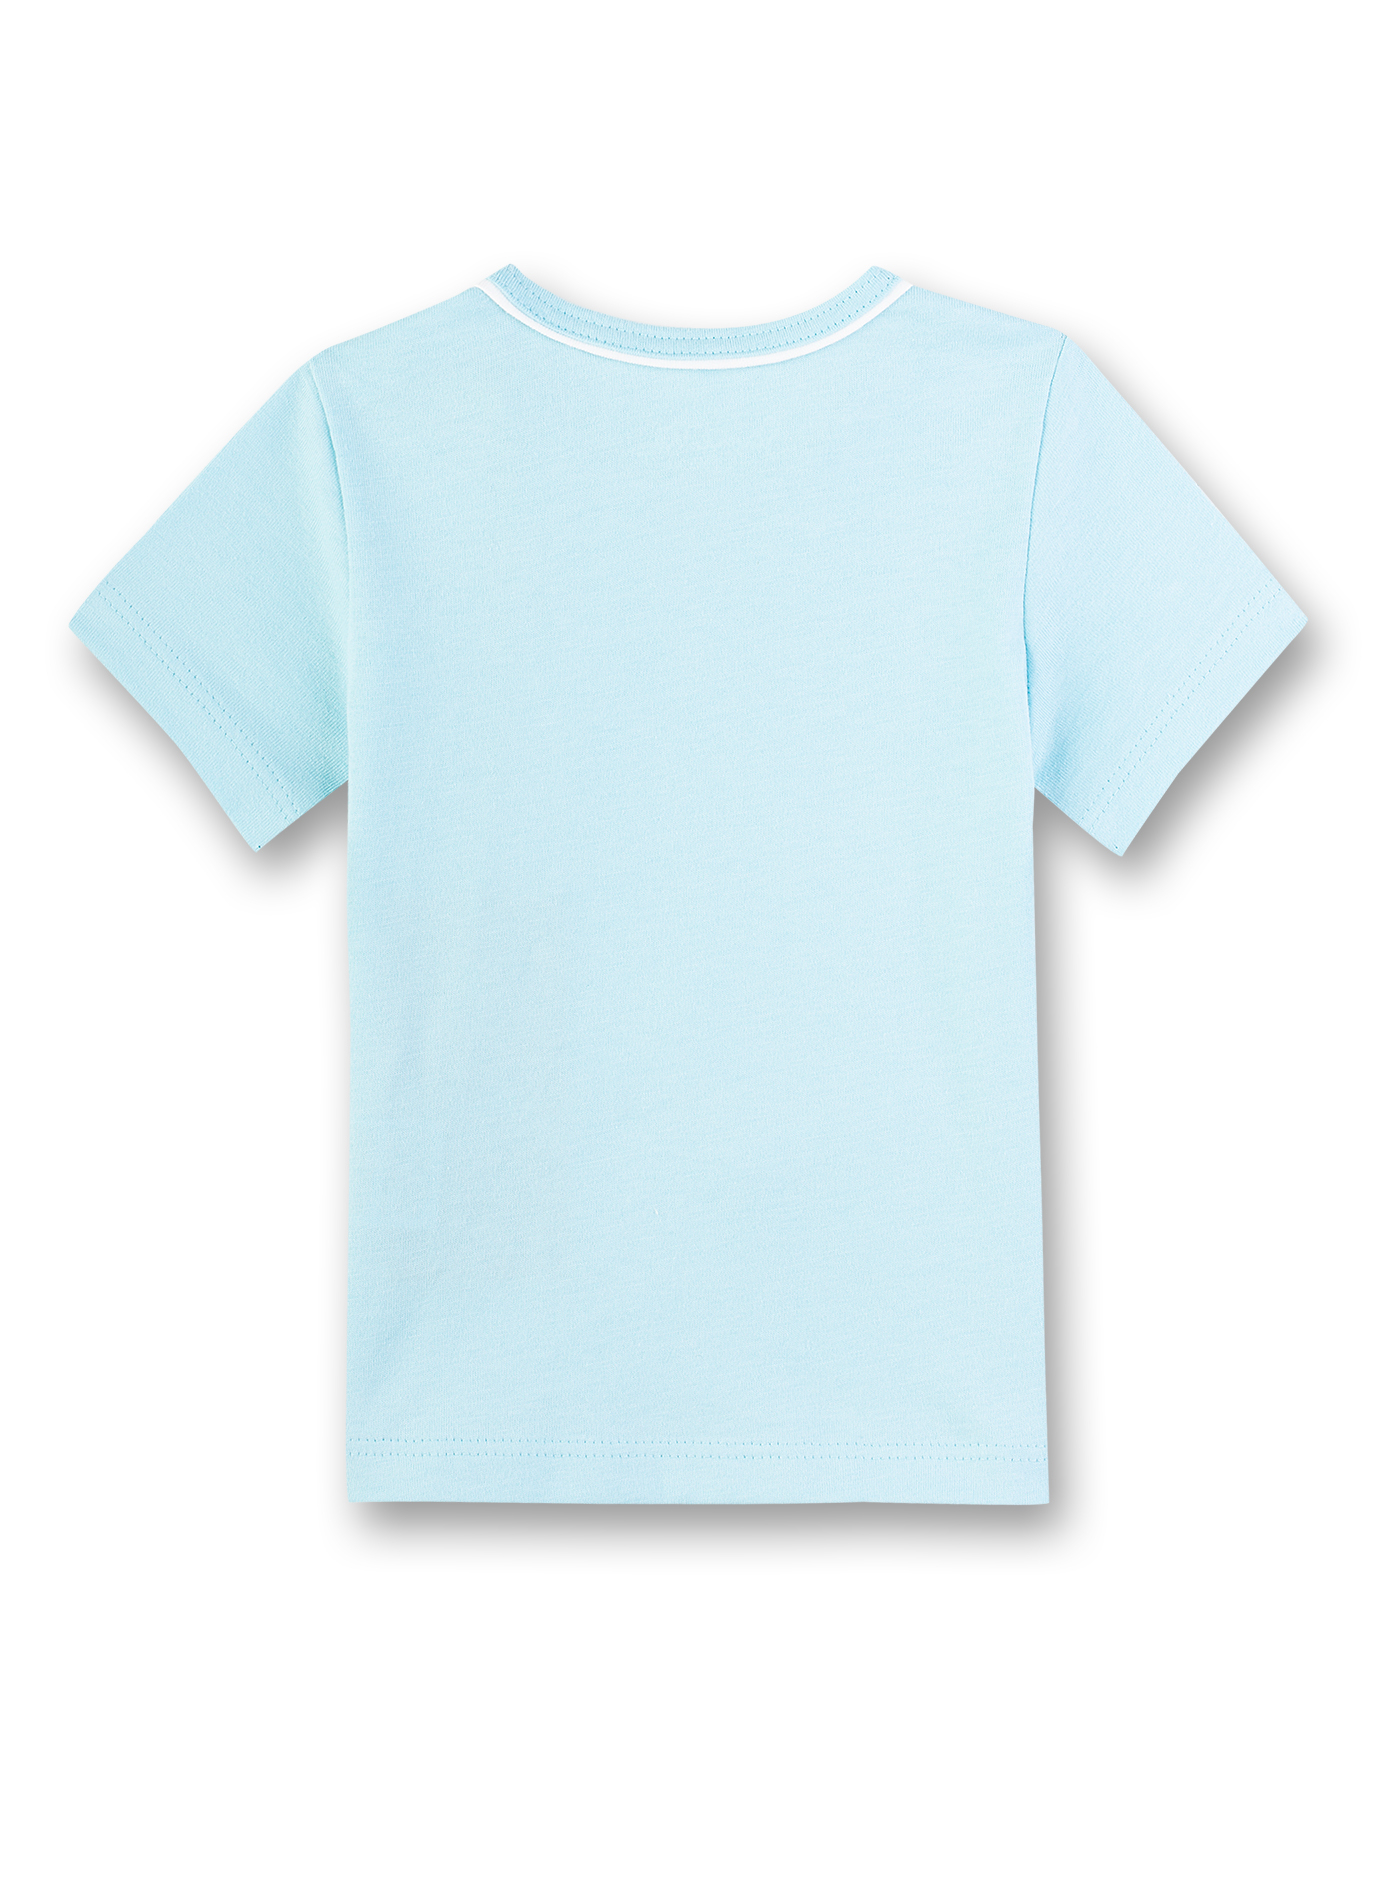 Jungen T-Shirt Hellblau Little Friends